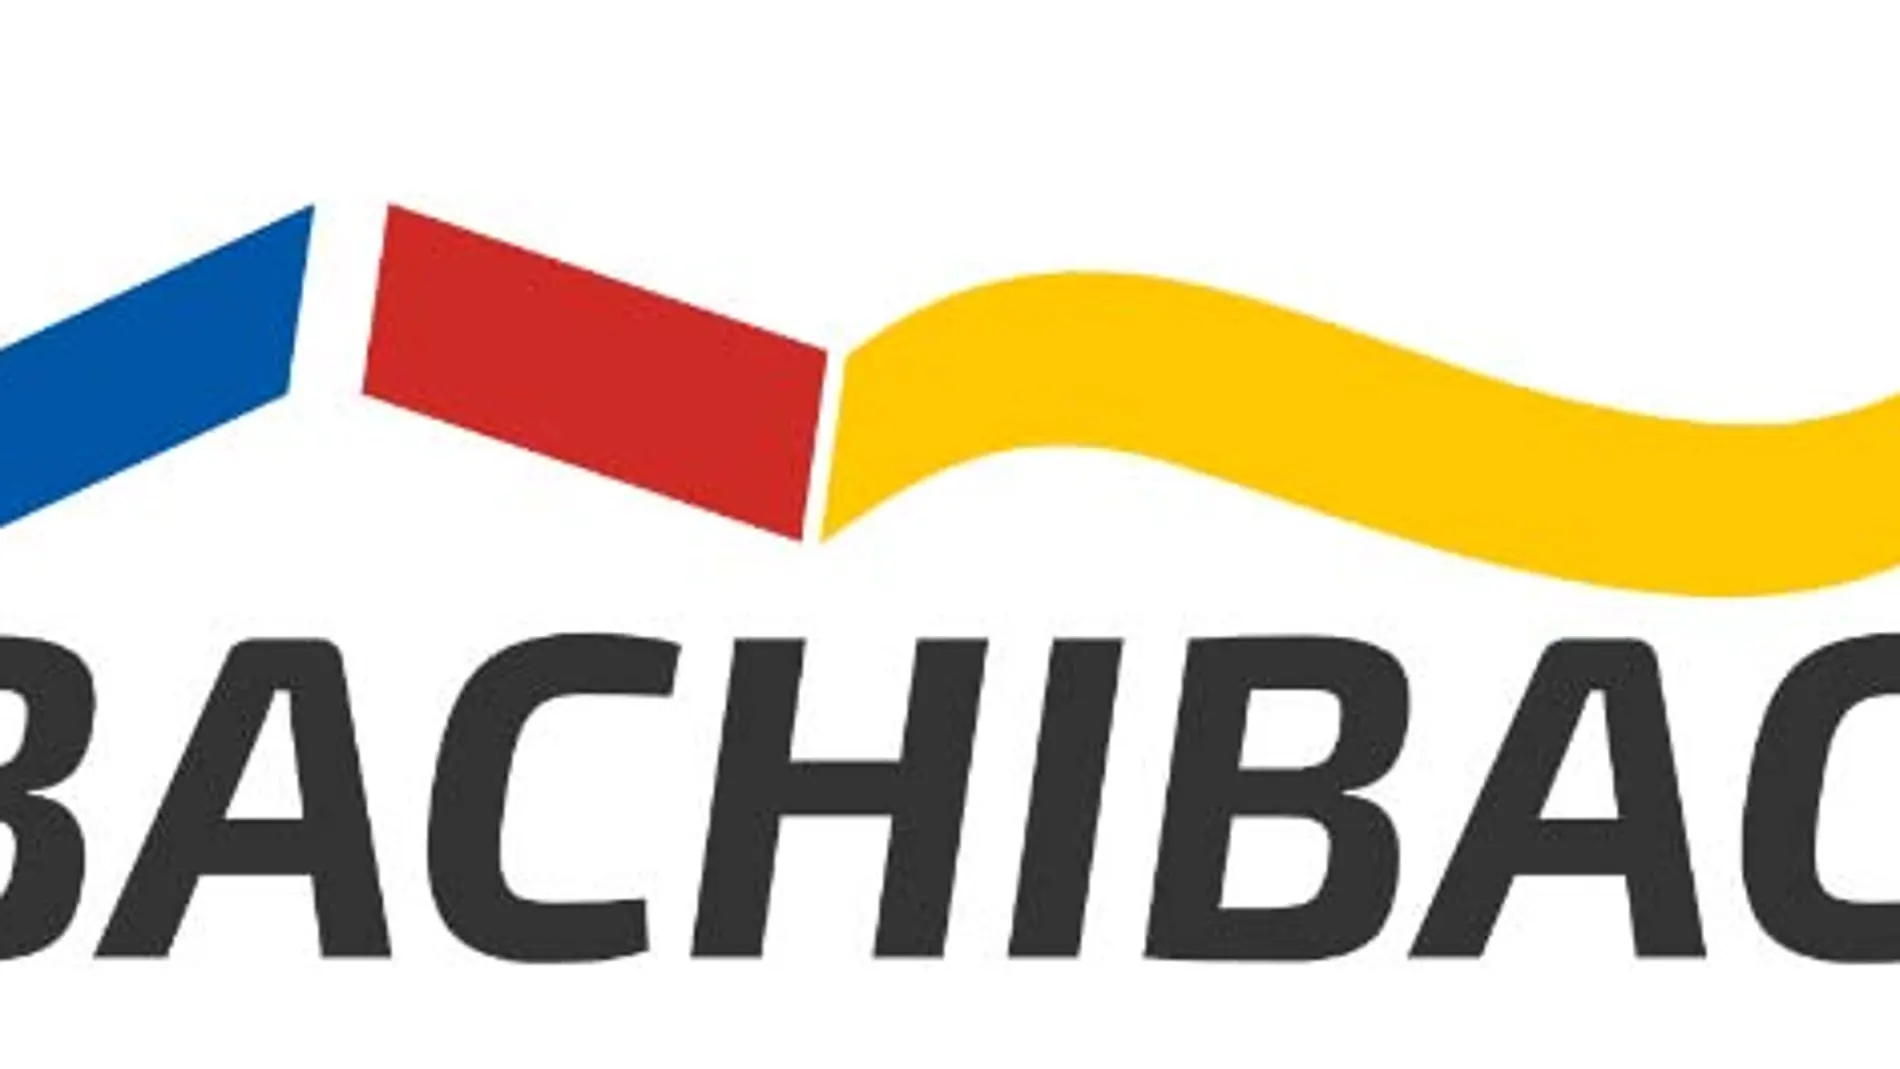 Logotipo de Bachibac elegido